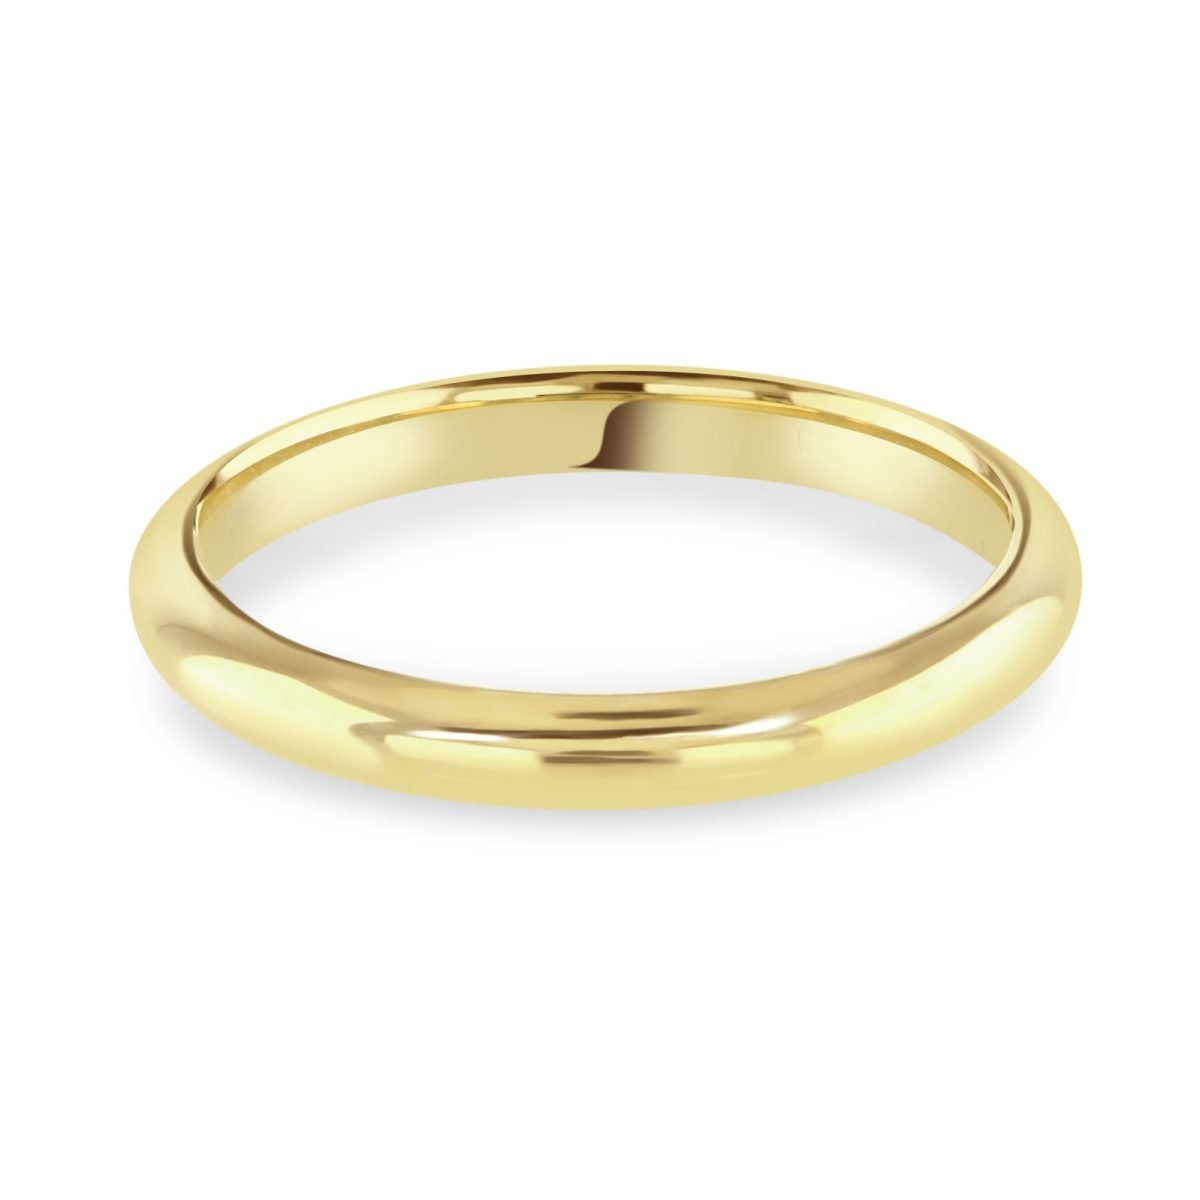 Yellow Gold Wedding Ring - David M Robinson